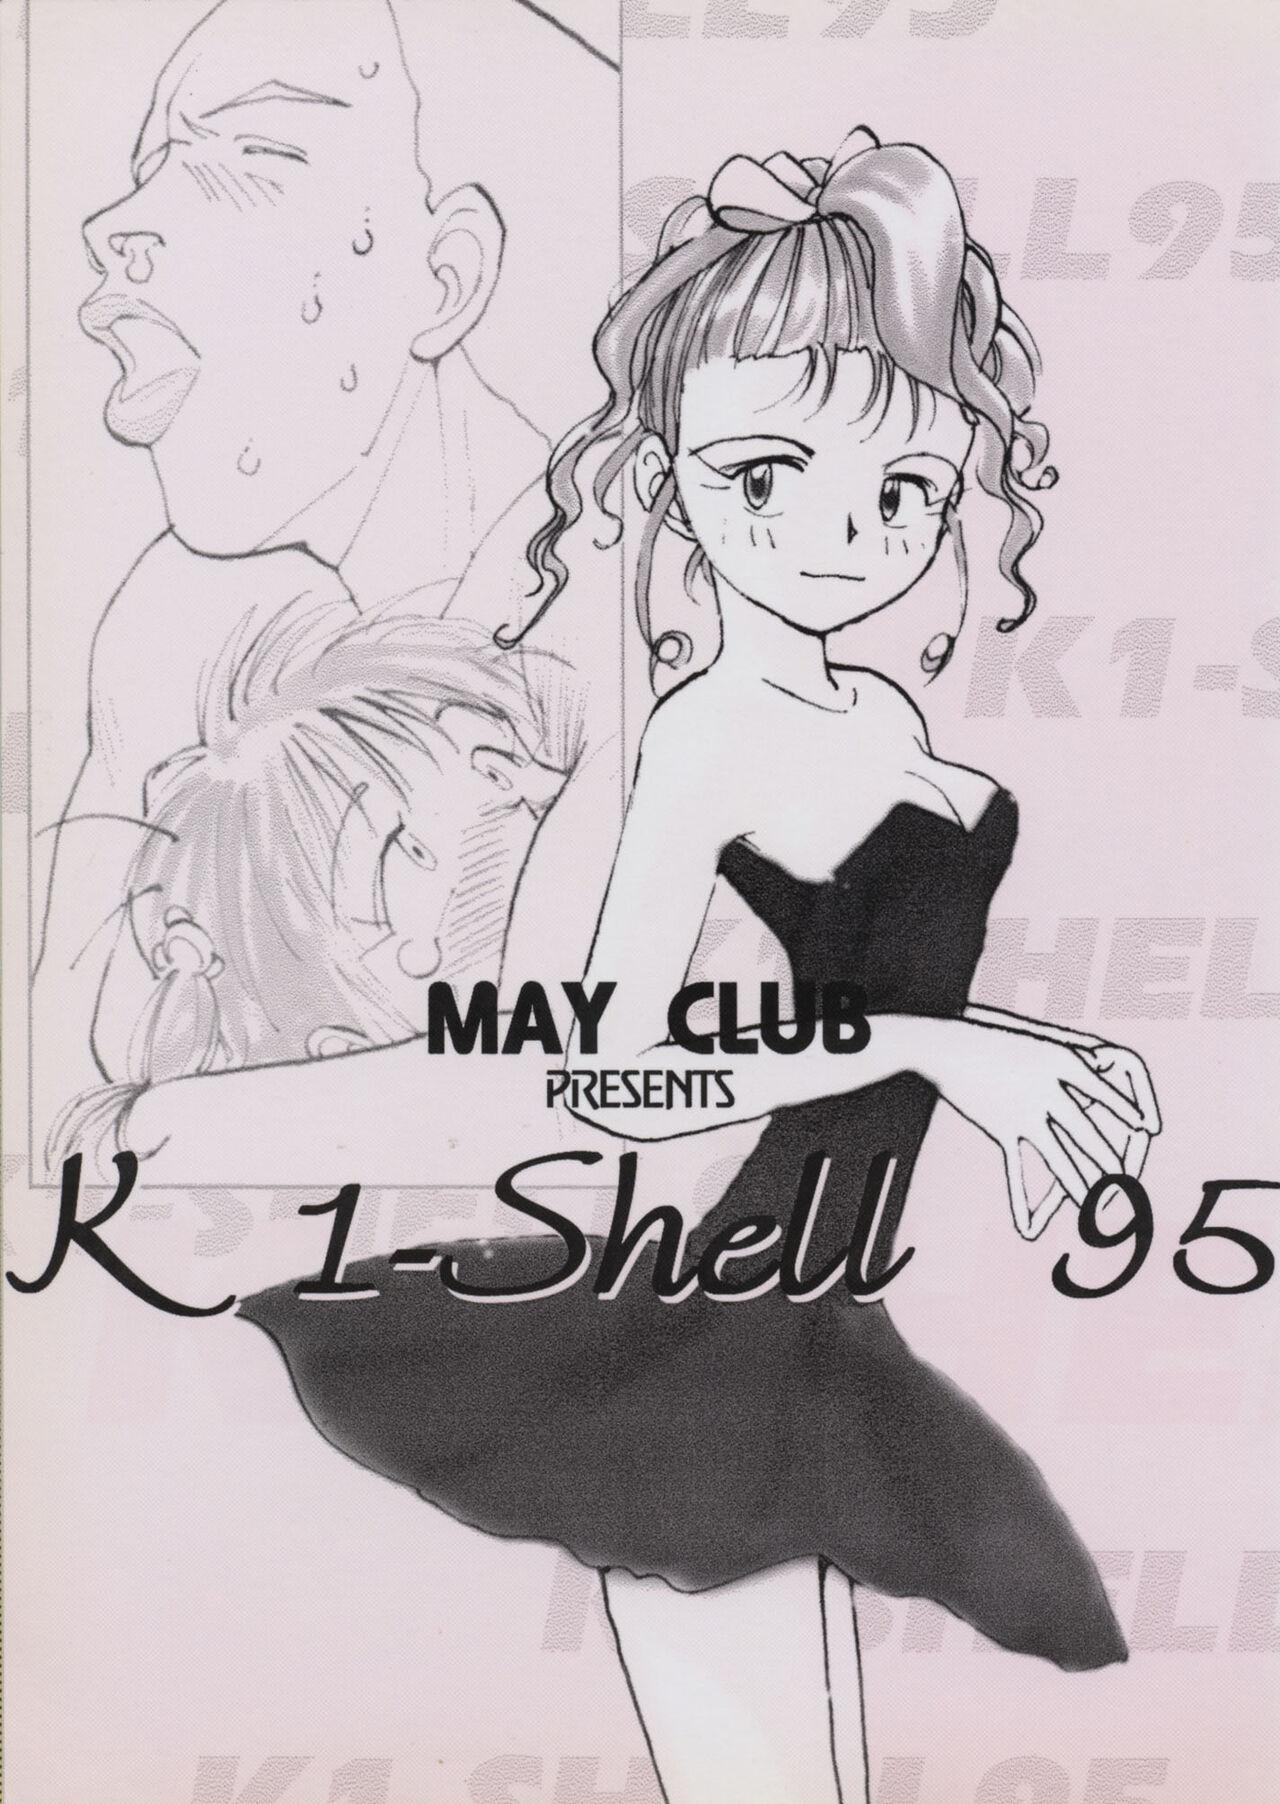 K1-Shell 95 0